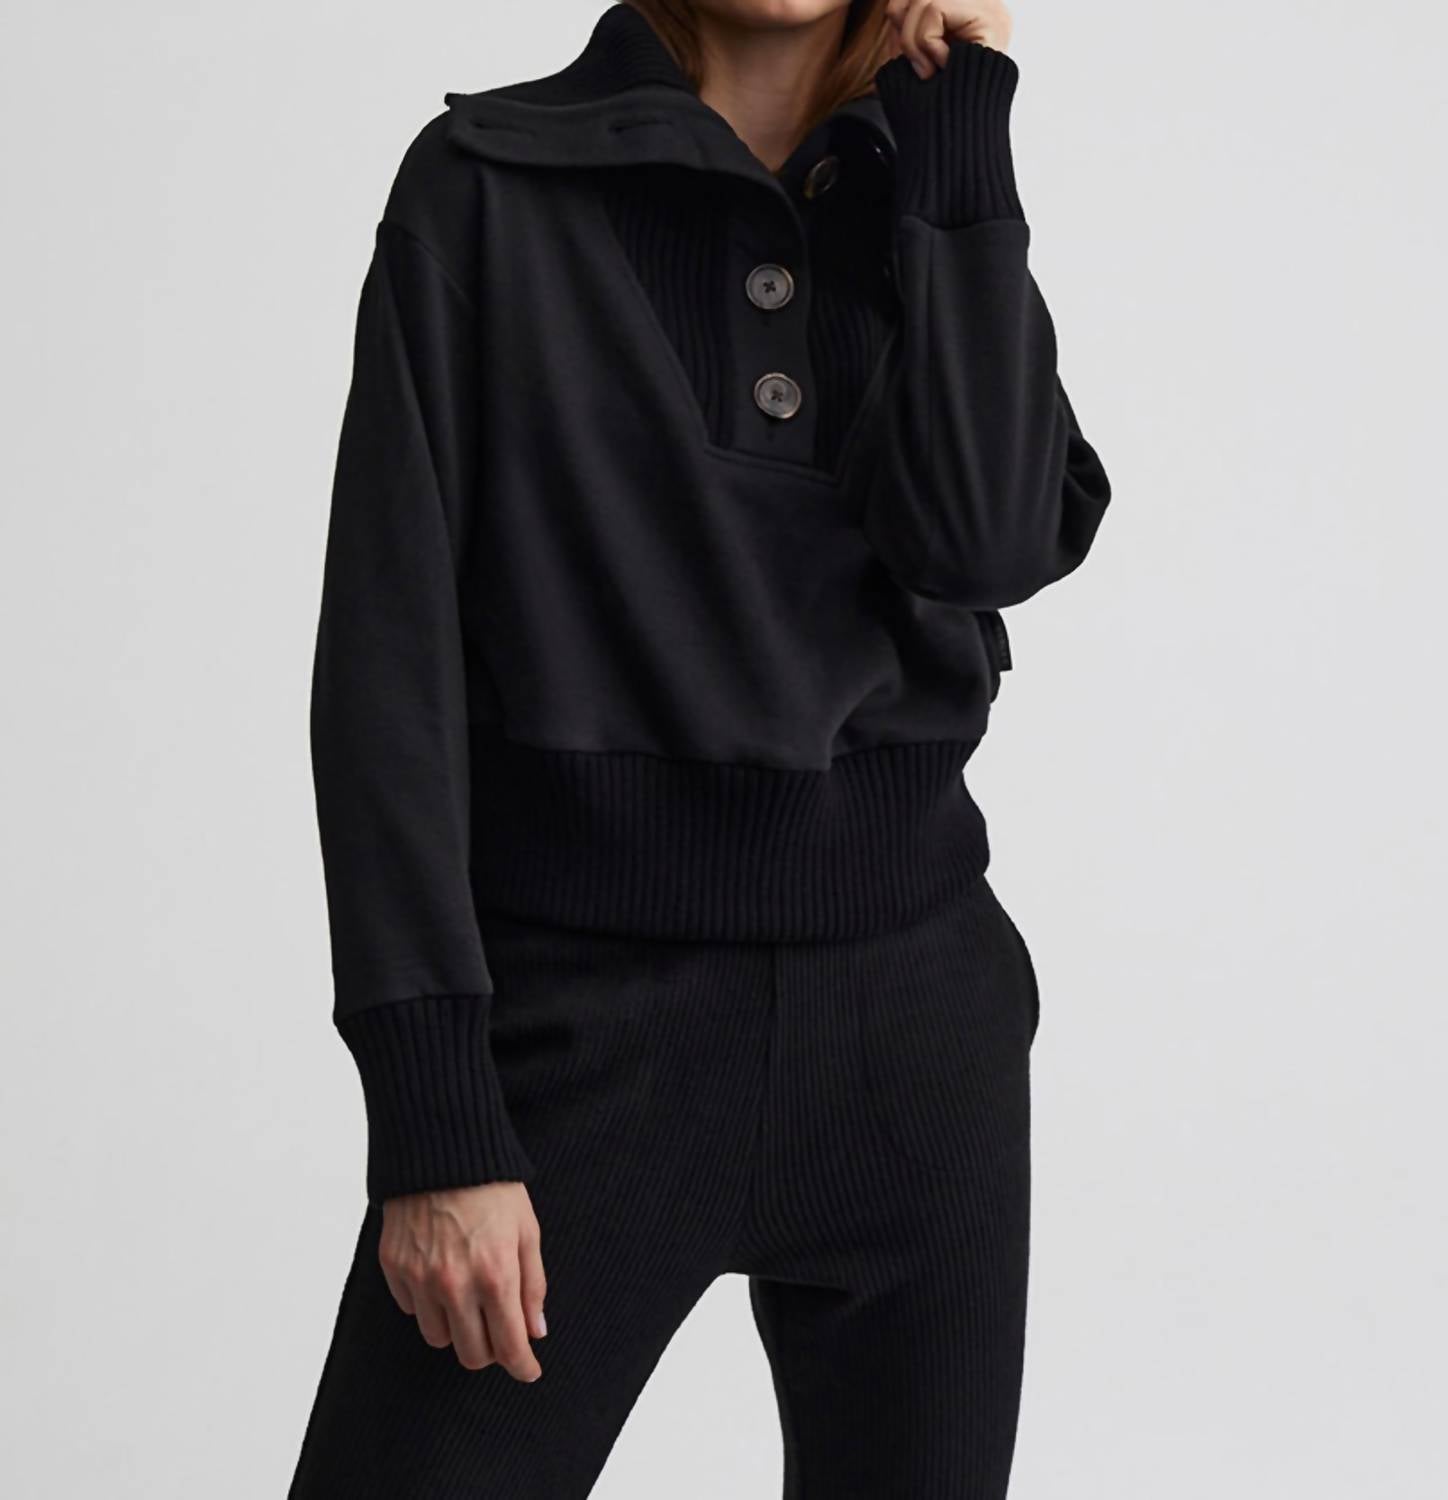 VARLEY Milan Sweater in Black